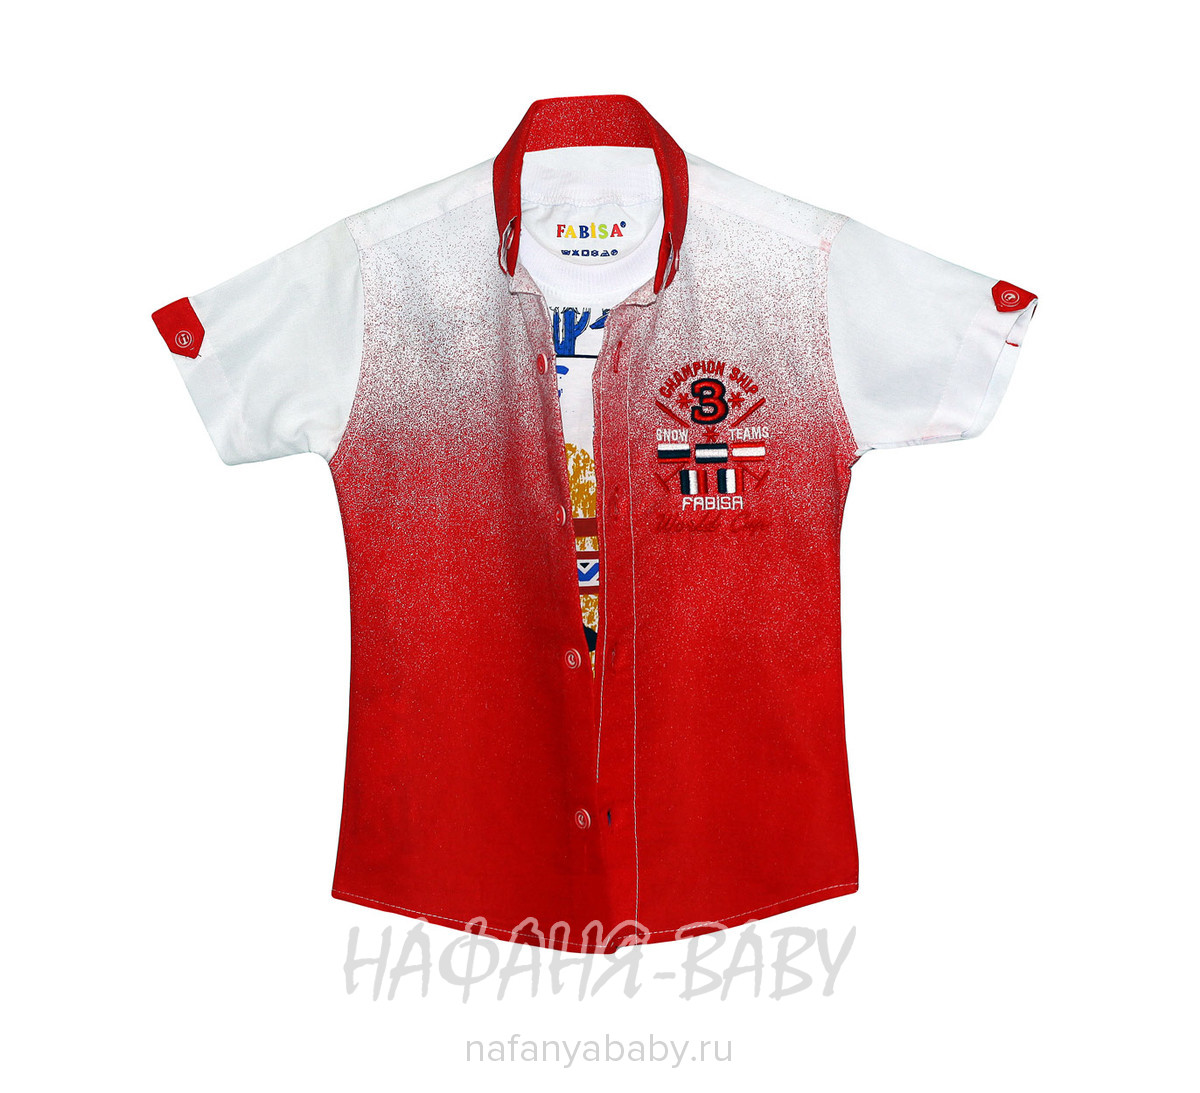 Детская рубашка+майка, артикул 118 9-12 FABISA арт: 118 9-12, цвет красный, оптом Турция